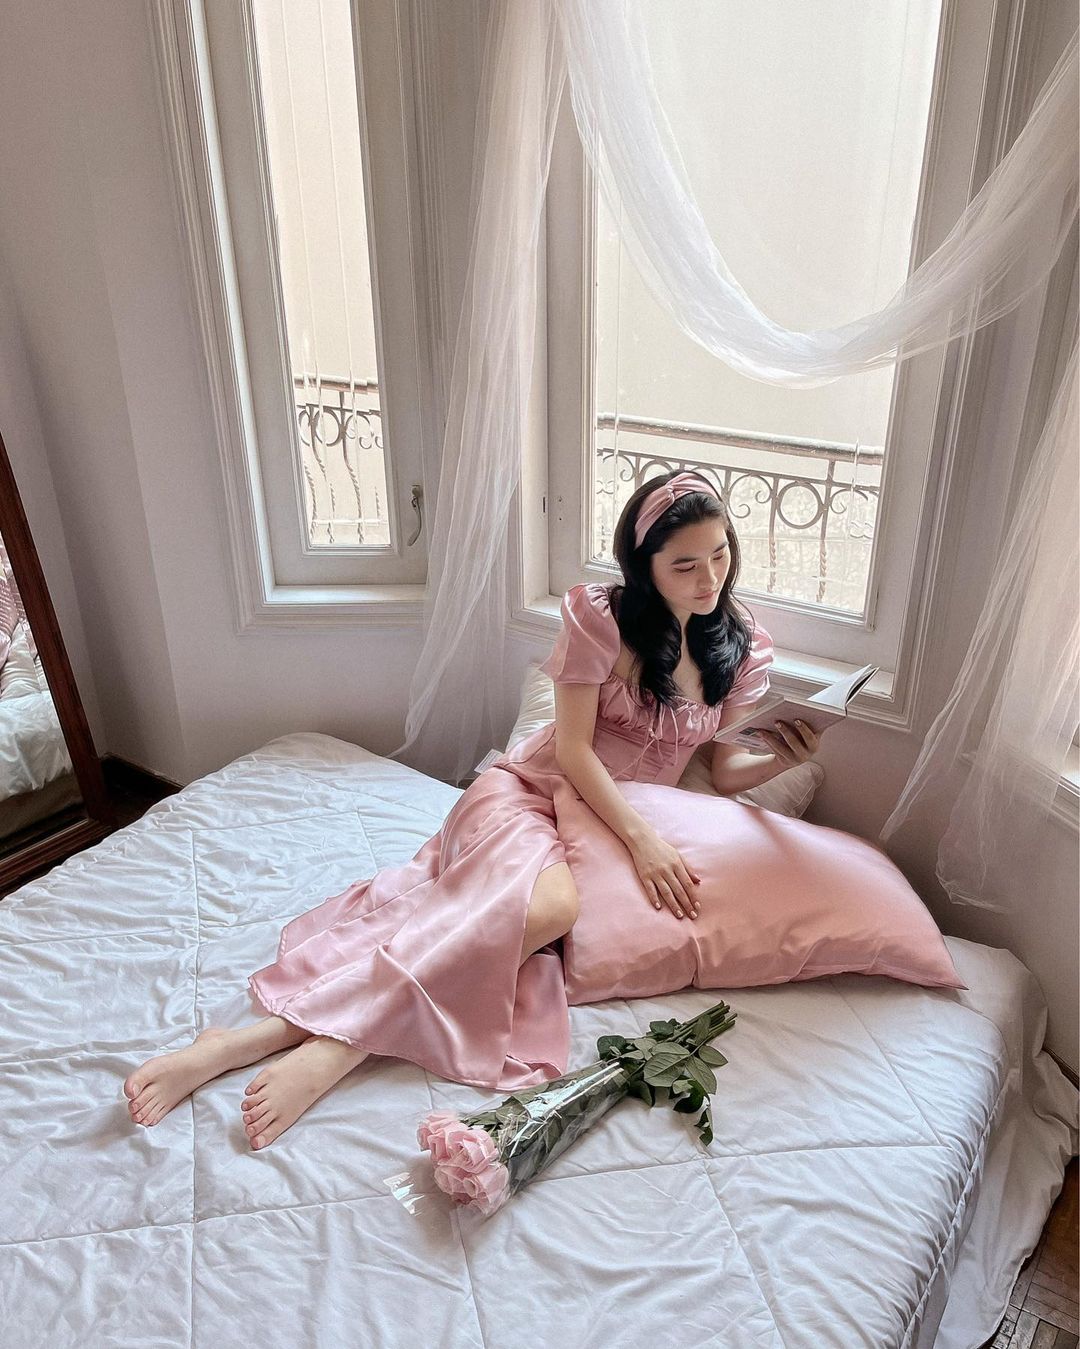 身穿 the.lookbook.select 復古粉紅色 Adella 連身裙的女士坐在窗邊的床上，窗前掛著透明窗簾，手裡拿著一束玫瑰。